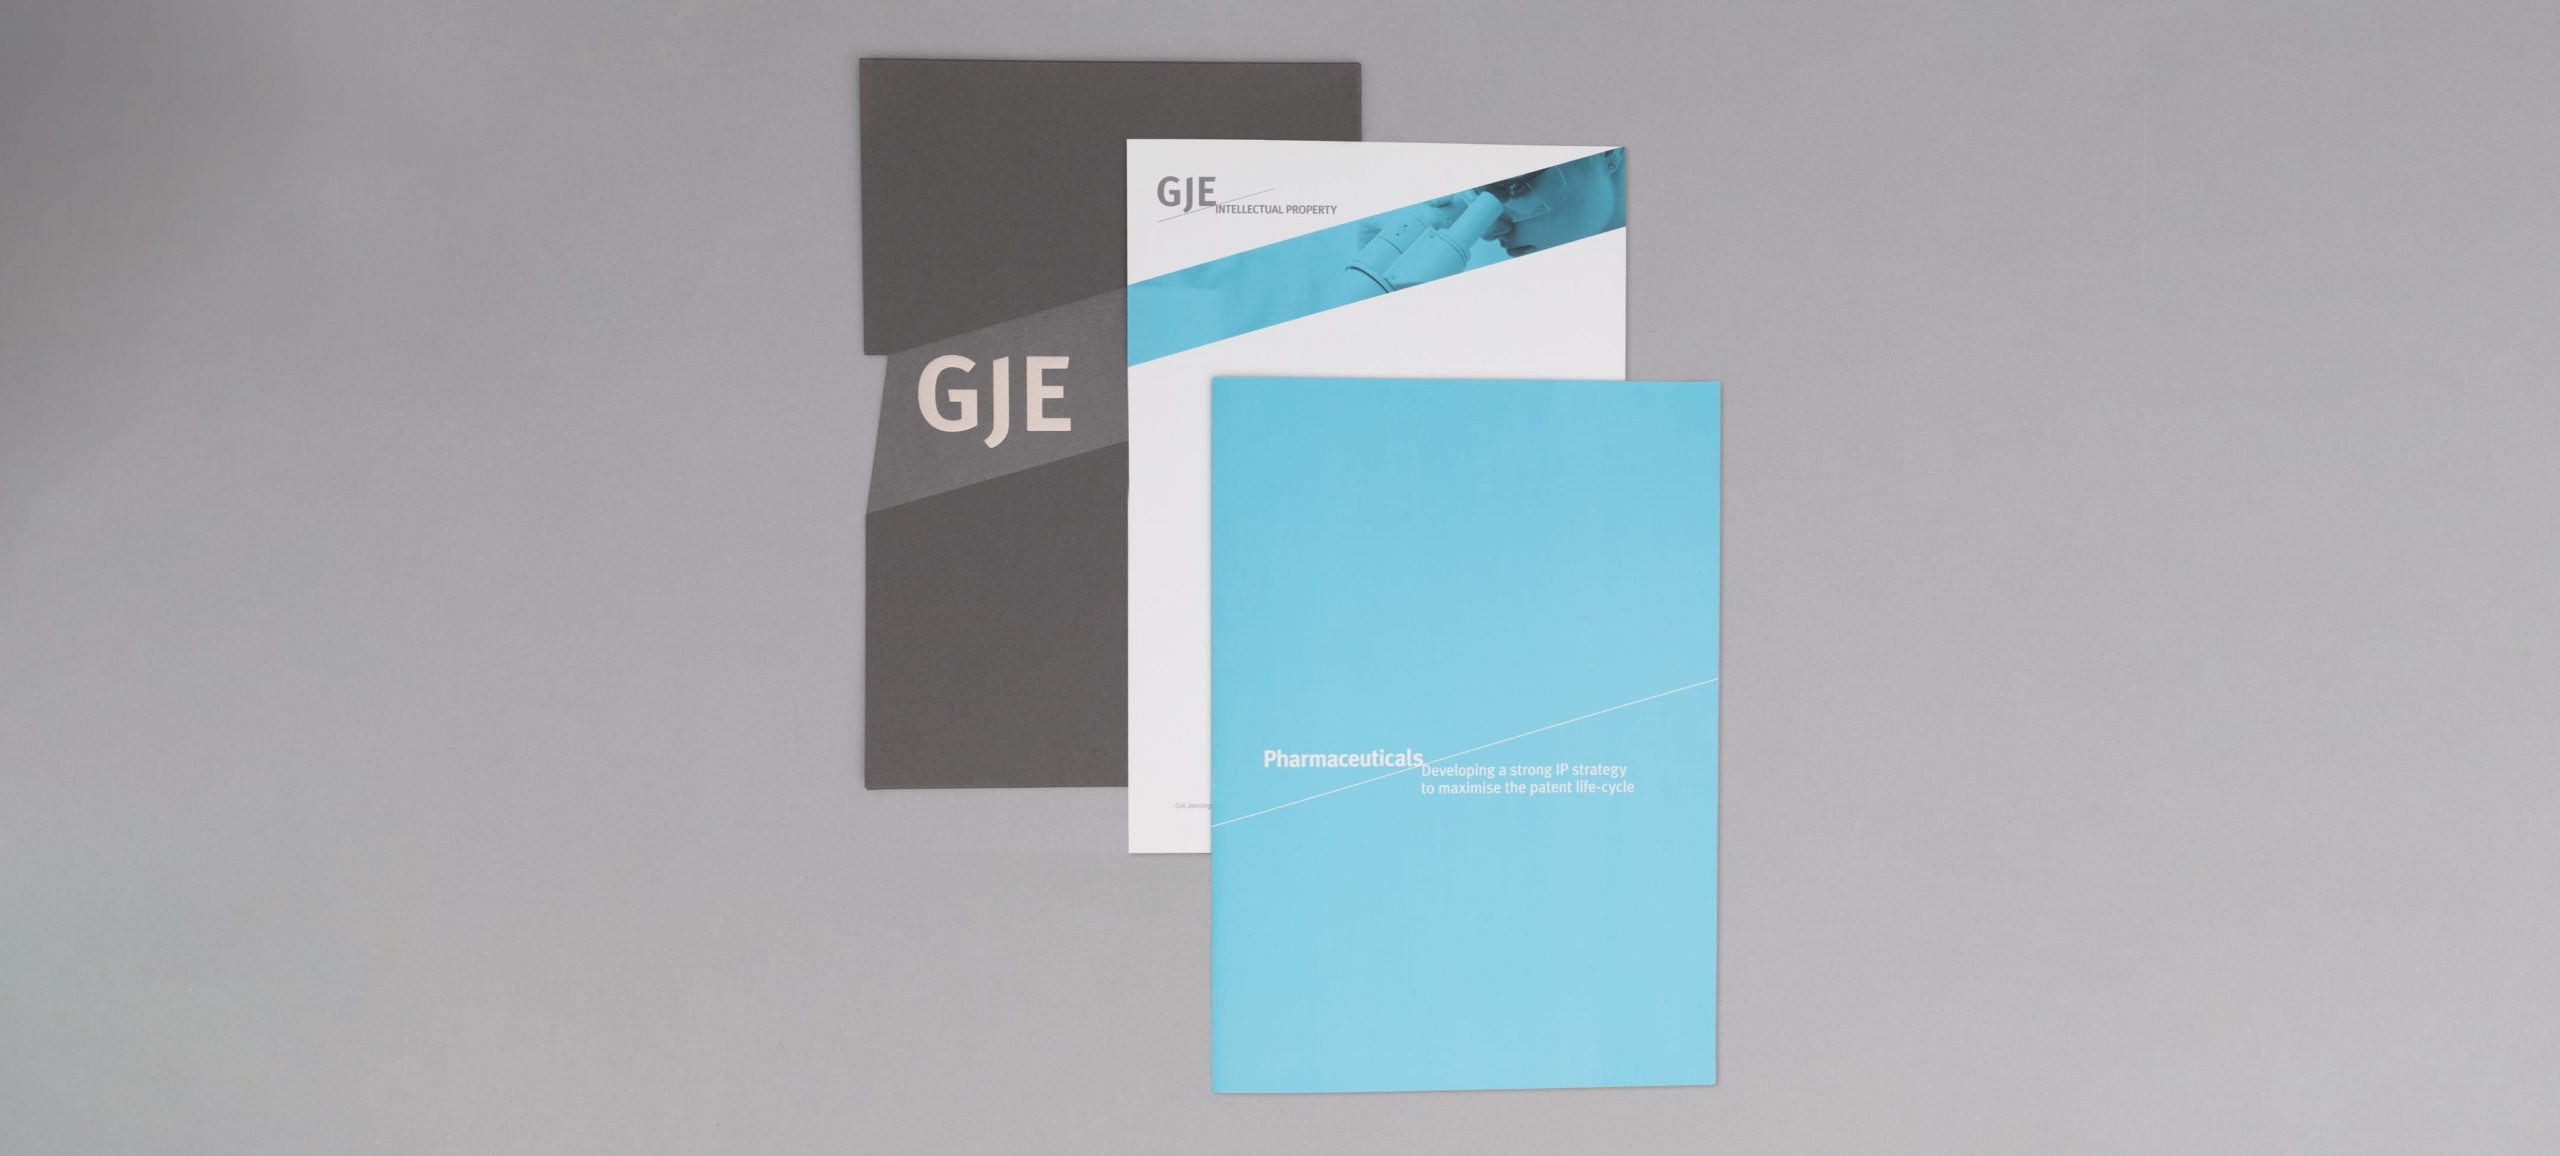 GJE rebranded covers